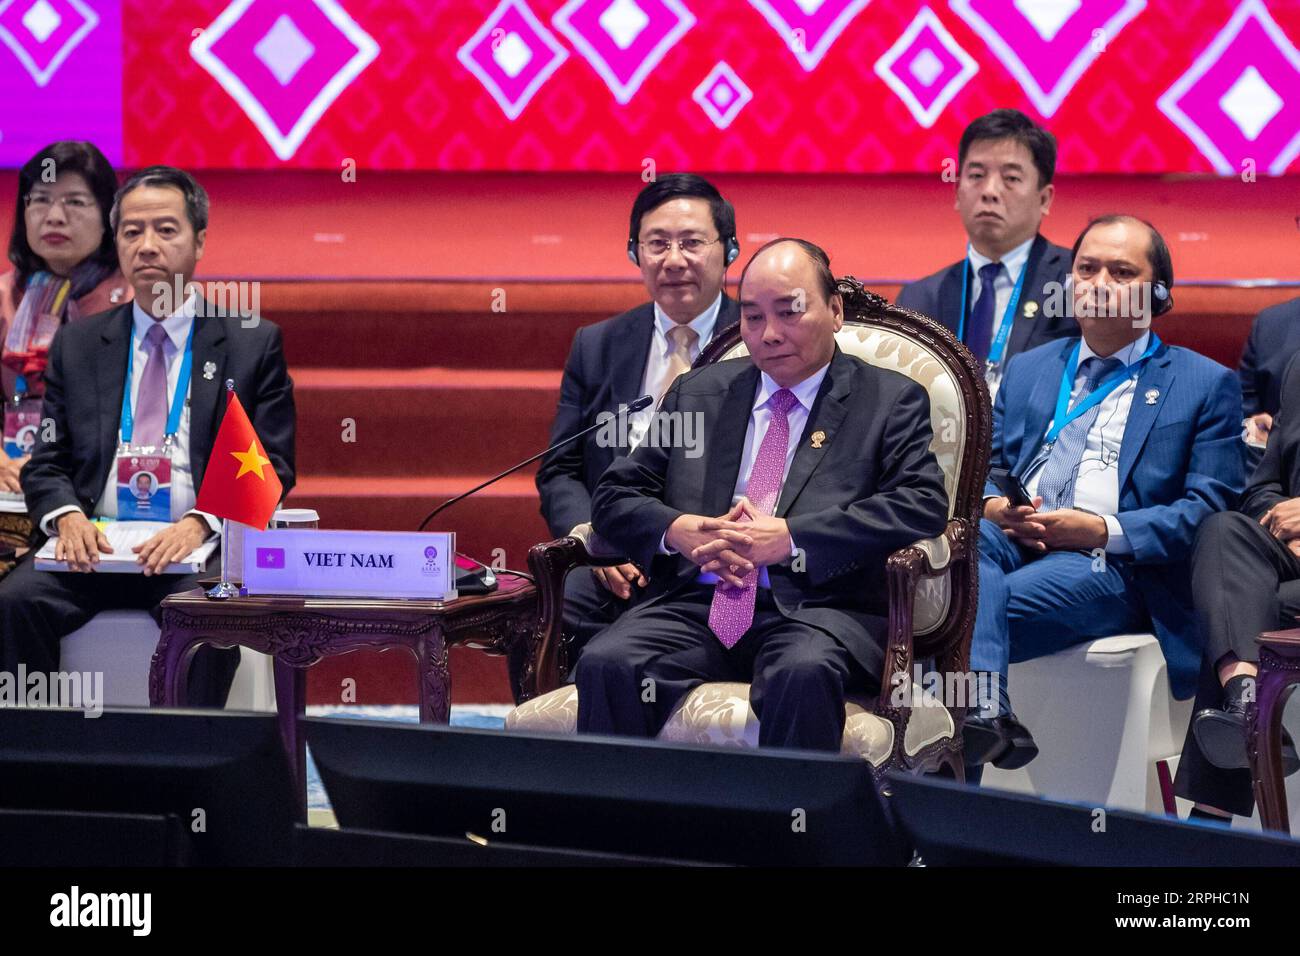 191104 -- BANGKOK, le 4 novembre 2019 -- le Premier ministre vietnamien Nguyen Xuan Phuc participe au 14e Sommet de l'Asie de l'est à Bangkok, Thaïlande, le 4 novembre 2019. Le sommet est un événement régional annuel réunissant 10 membres de l'Association des nations de l'Asie du Sud-est ASEAN, ainsi que la Chine, le Japon, la Corée du Sud, l'Inde, l'Australie, nouvelle-Zélande, Russie et États-Unis. SOMMET THAÏLANDE-BANGKOK-ASIE DE L'EST ZhuxWei PUBLICATIONxNOTxINxCHN Banque D'Images